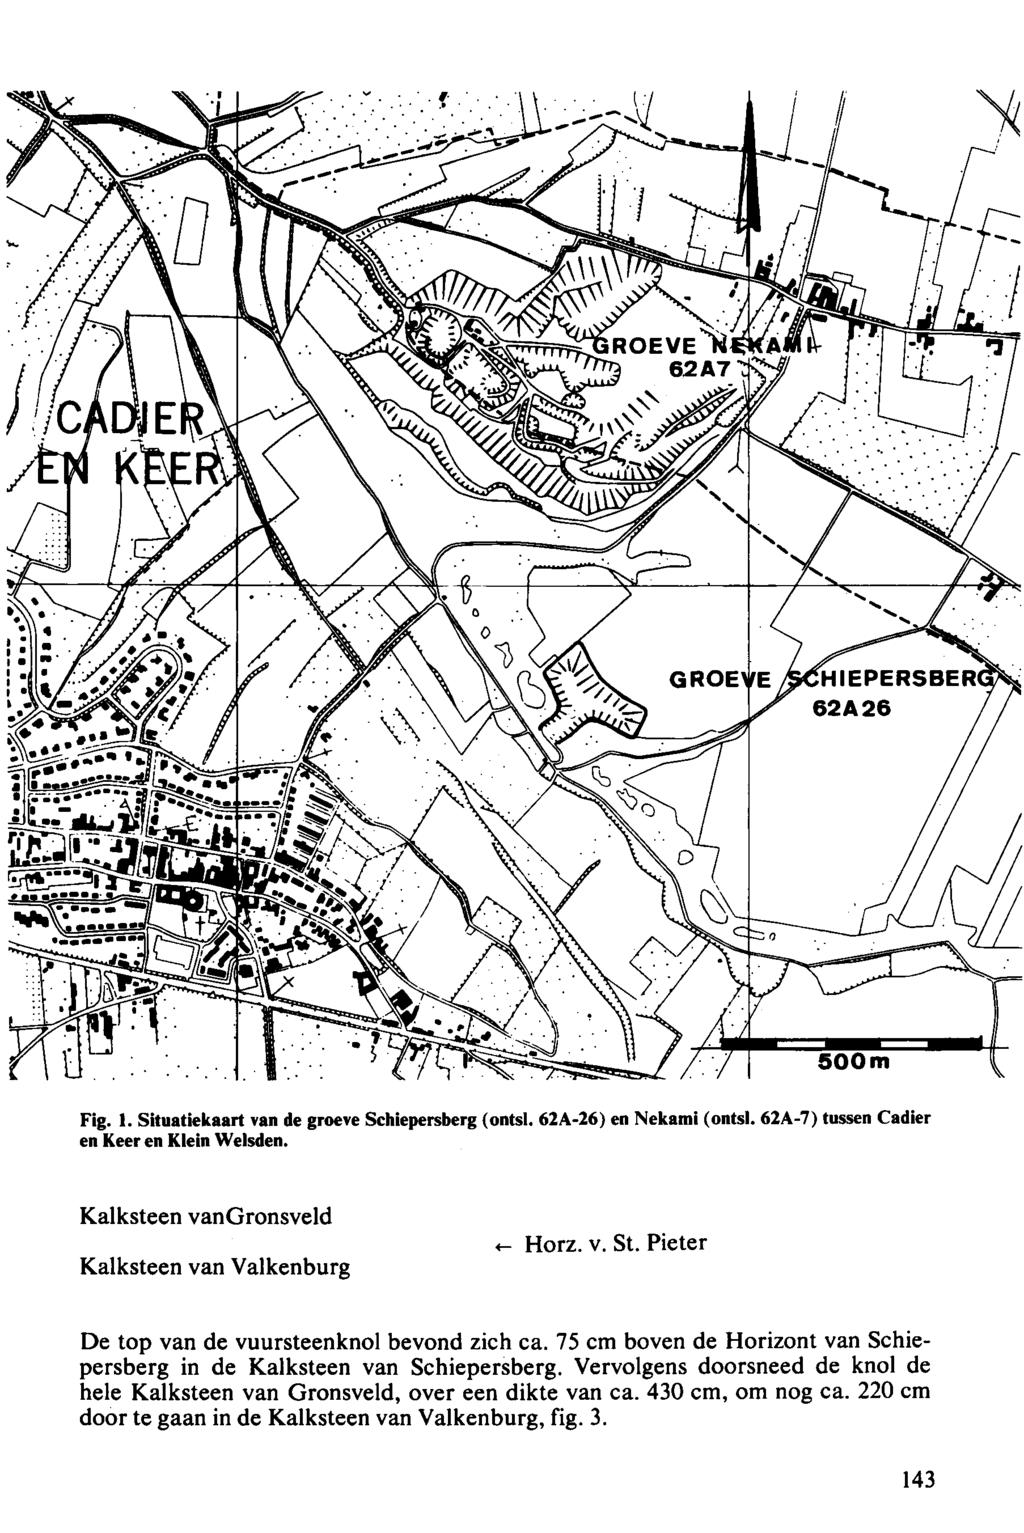 Fig. 1. Situatiekaart van de groeve Schiepersberg (ontsl. 62A-26) en Nekami (ontsl. 62A-7) tussen Cadier en Keer en Klein Welsden. Kalksteen vangronsveld Kalksteen van Valkenburg <- Horz. v. St.